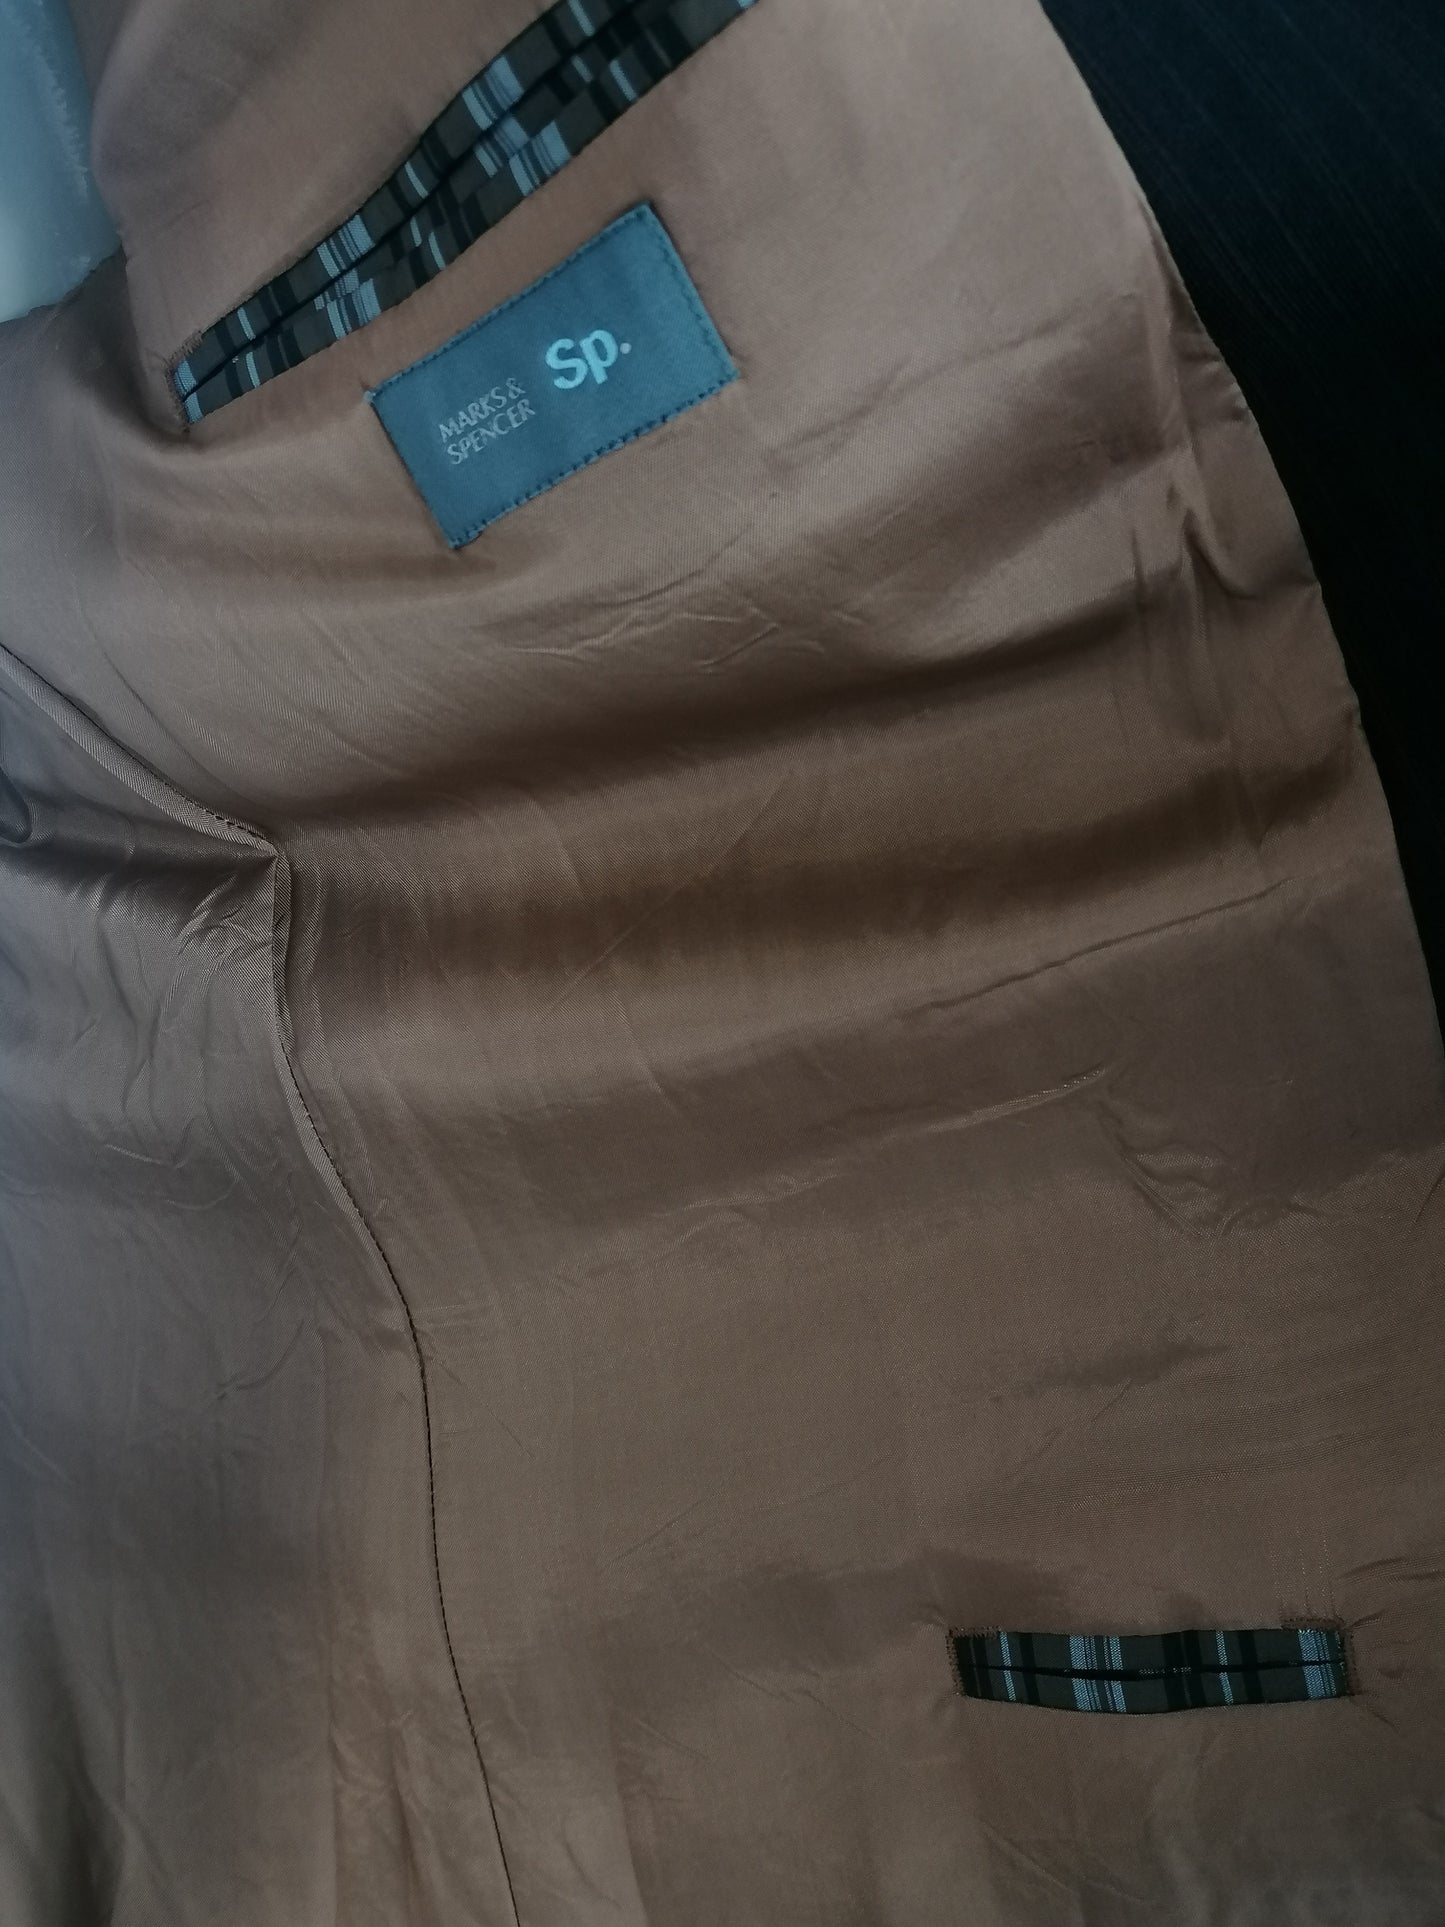 Marks & Spencer SP Wainen Veste. Rayé brun foncé. Modèle long. Taille 56 / XL.